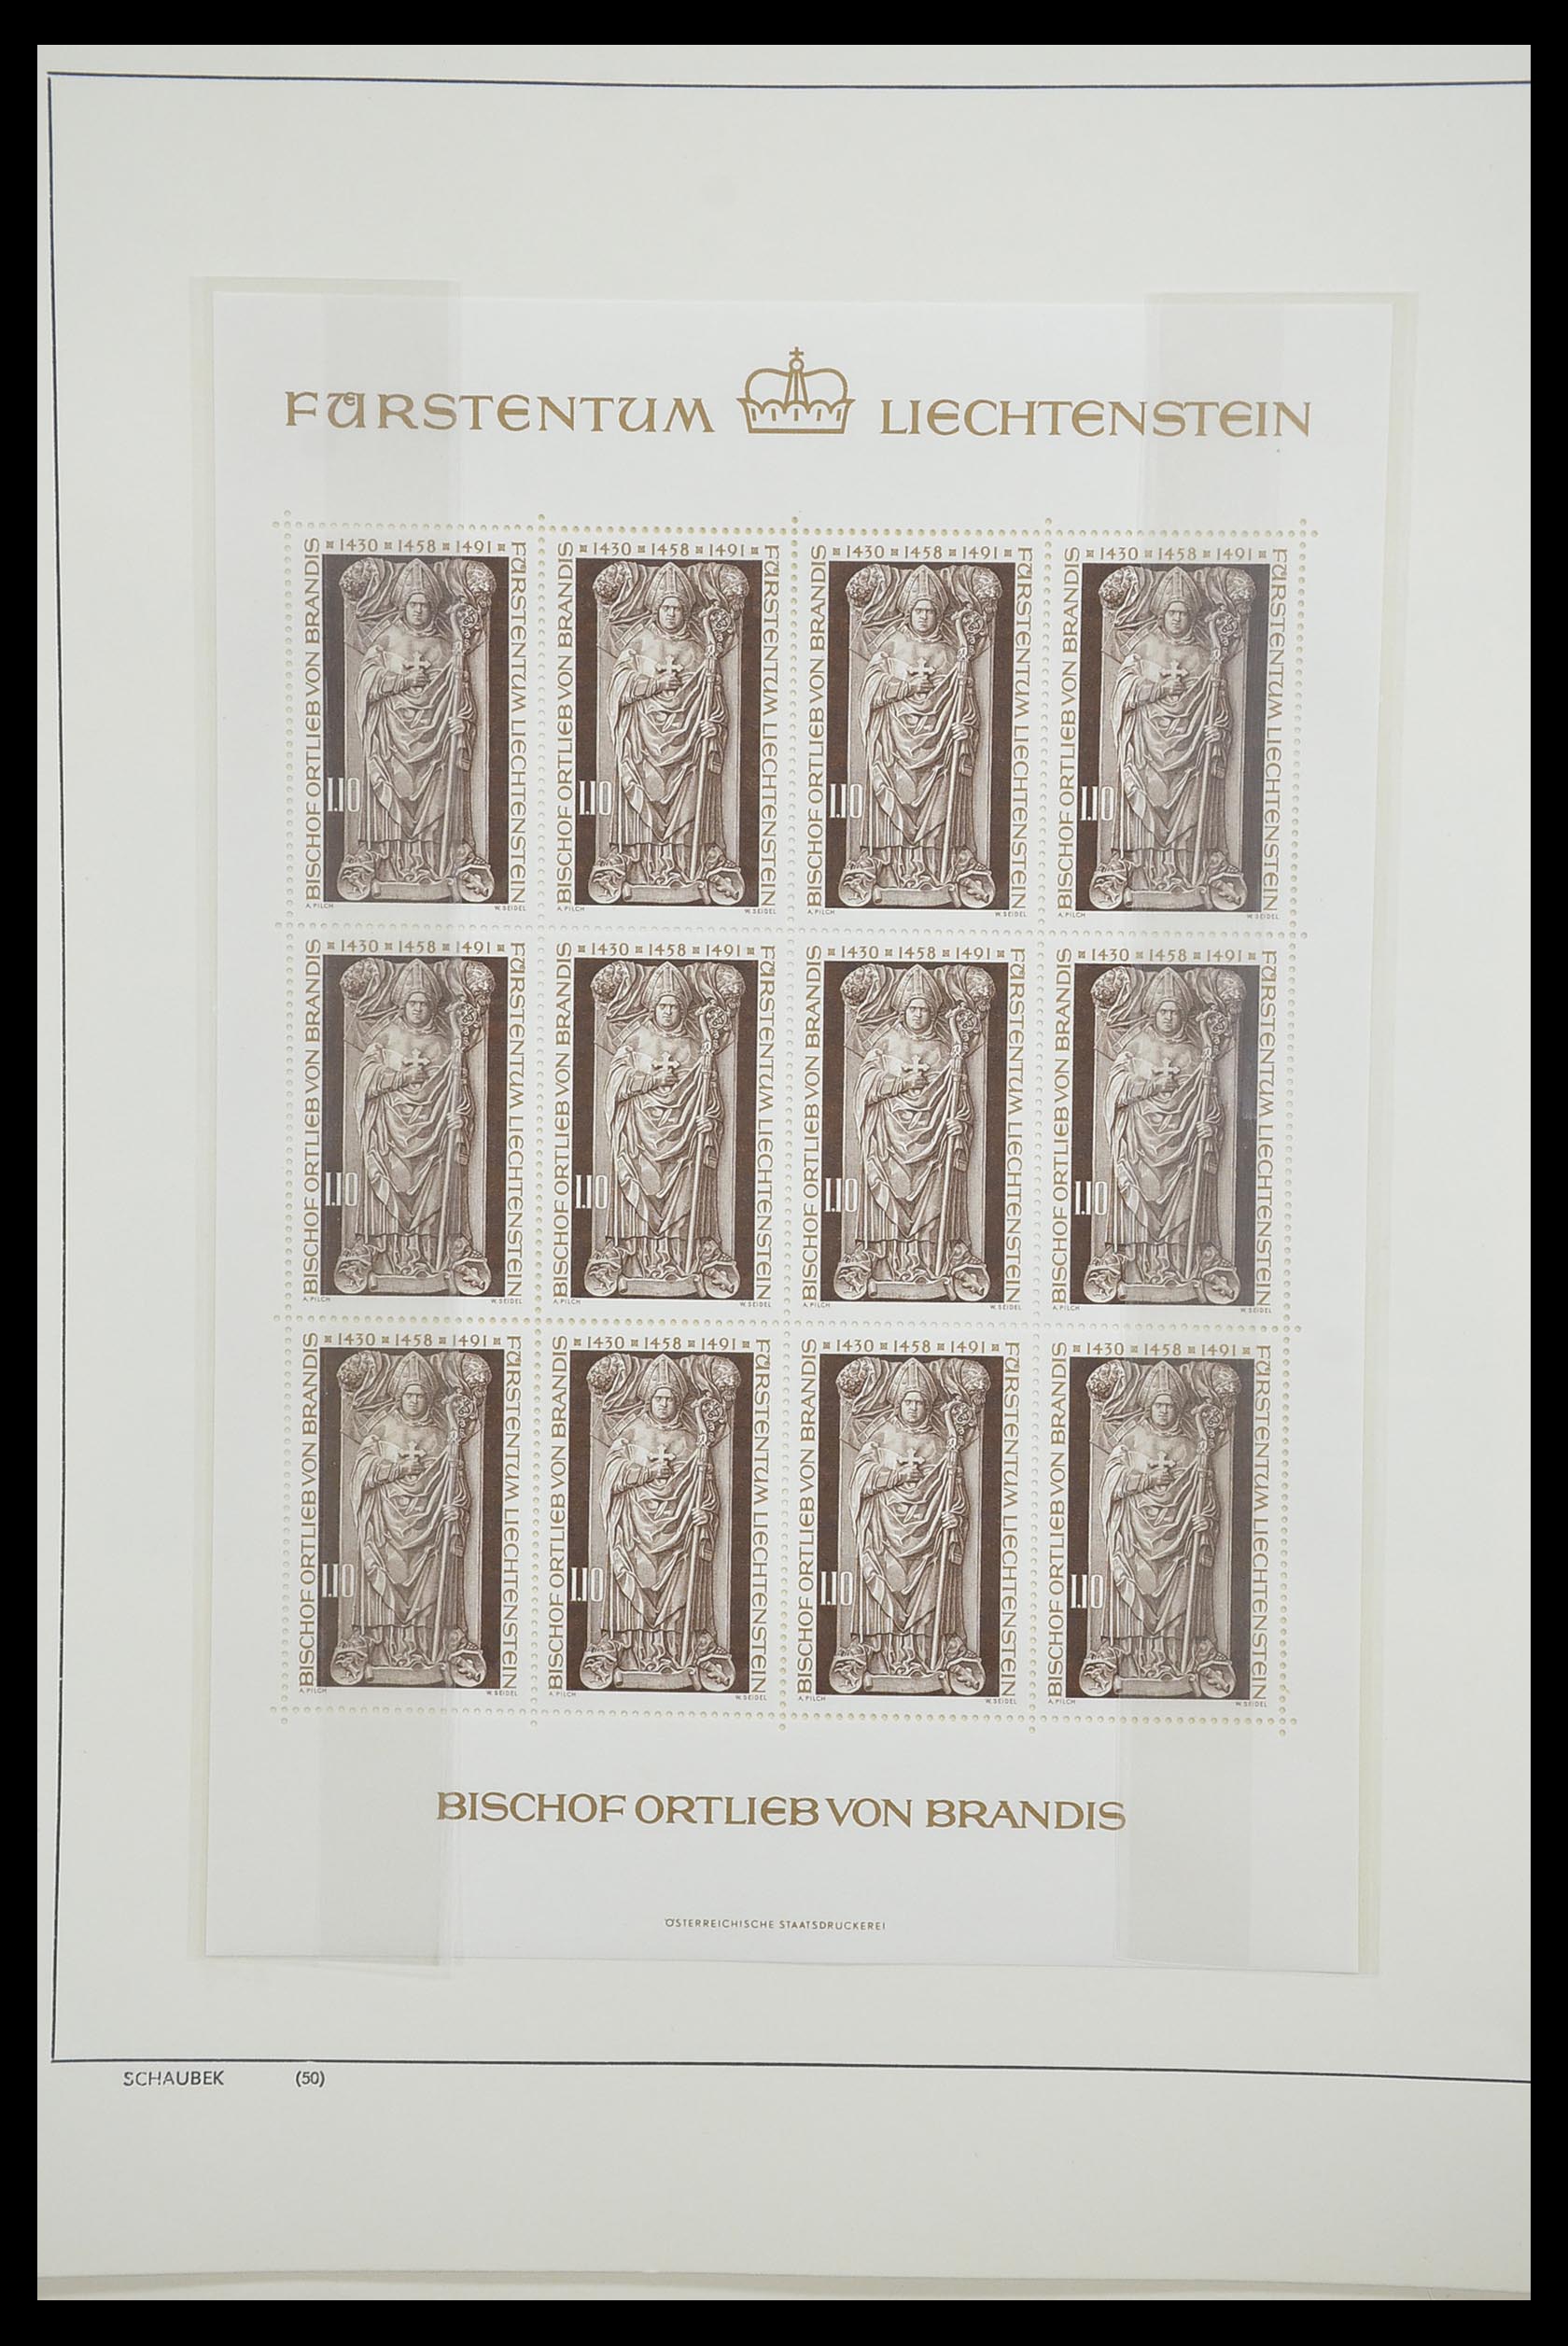 33274 362 - Stamp collection 33274 Liechtenstein 1912-1996.